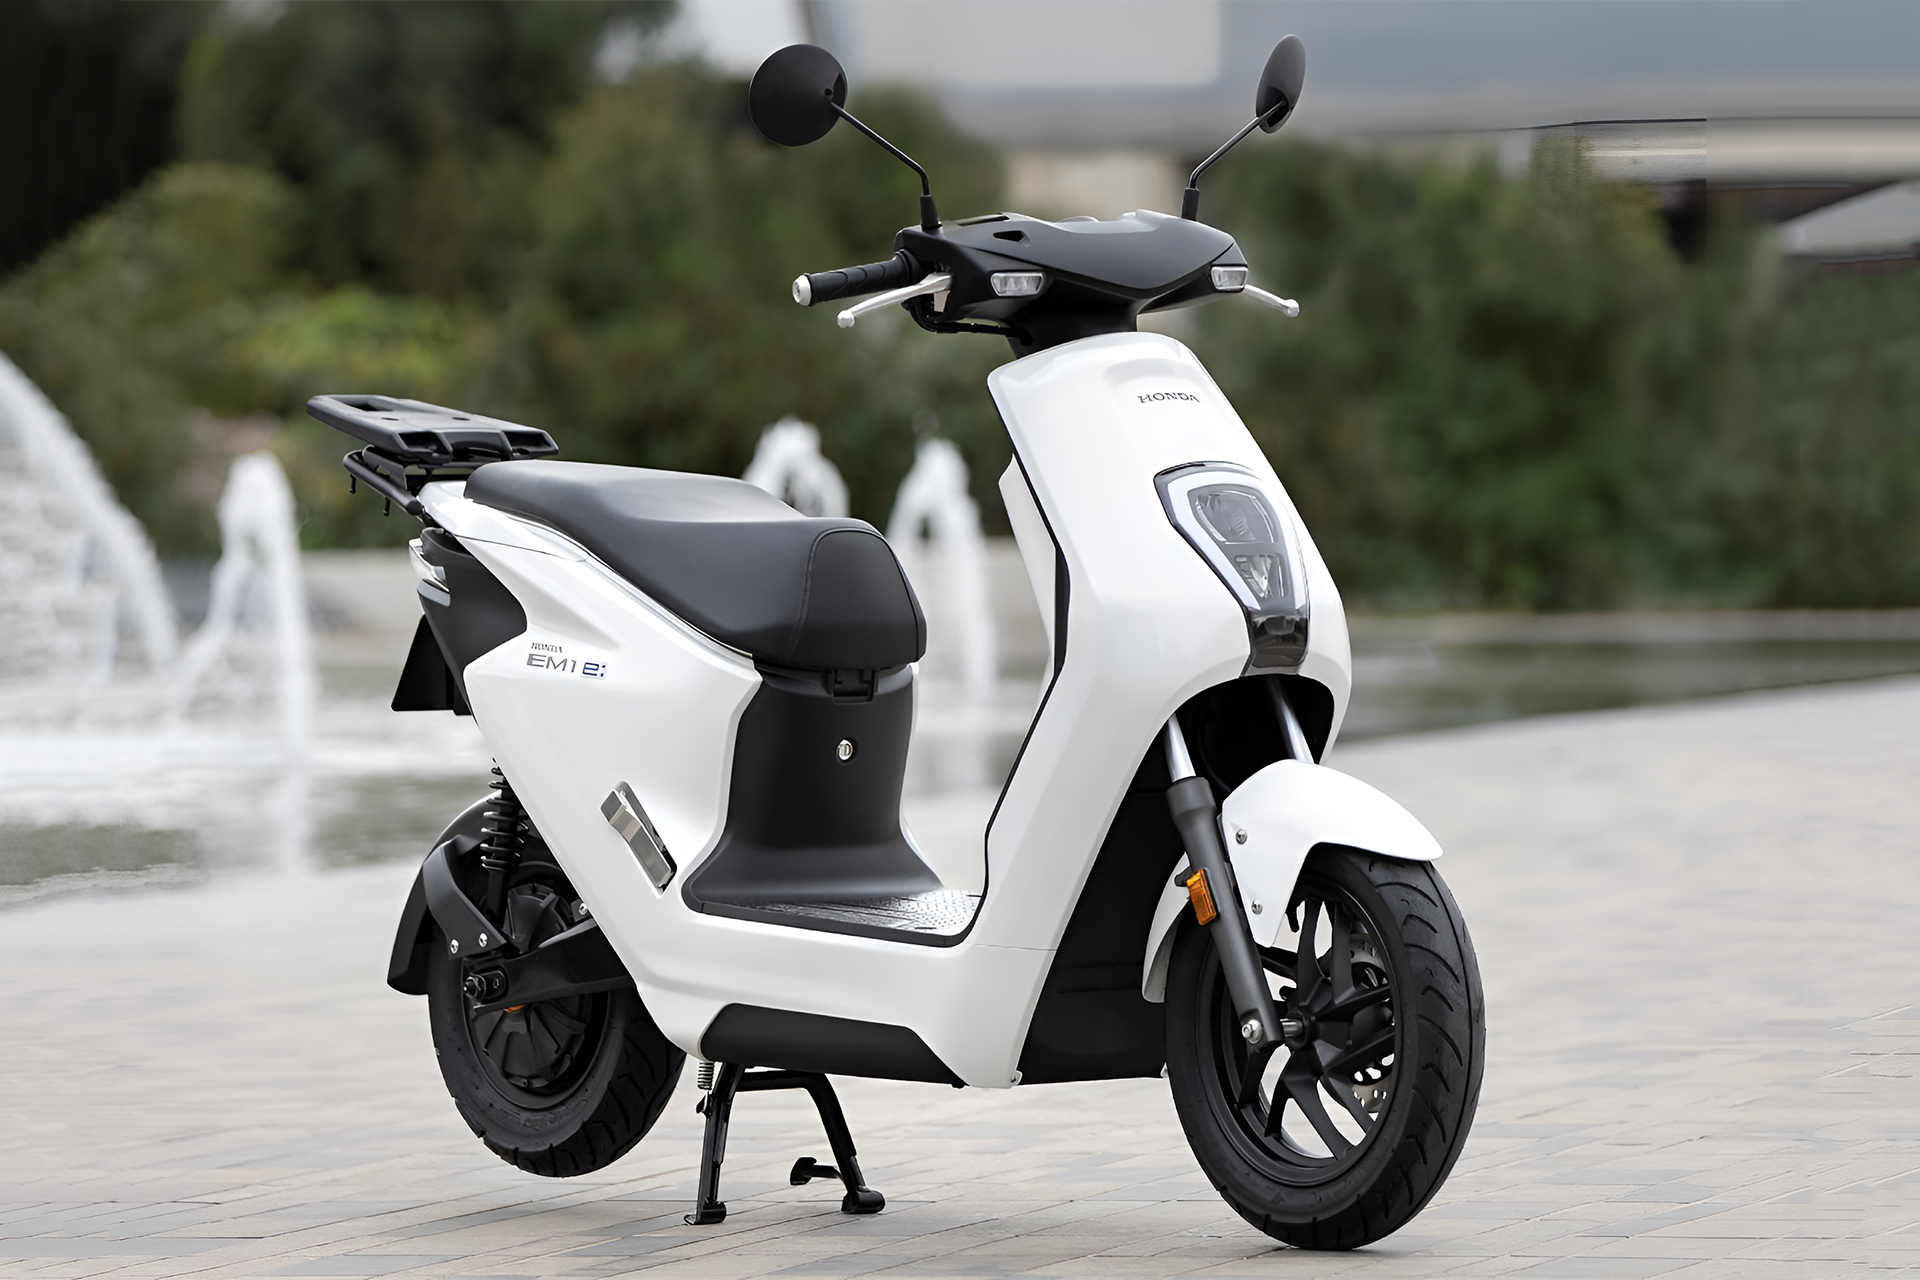 Honda apresenta nova scooter elétrica de baixo custo para jovens, que possui autonomia de 40 km e pode ser recarregada em qualquer lugar